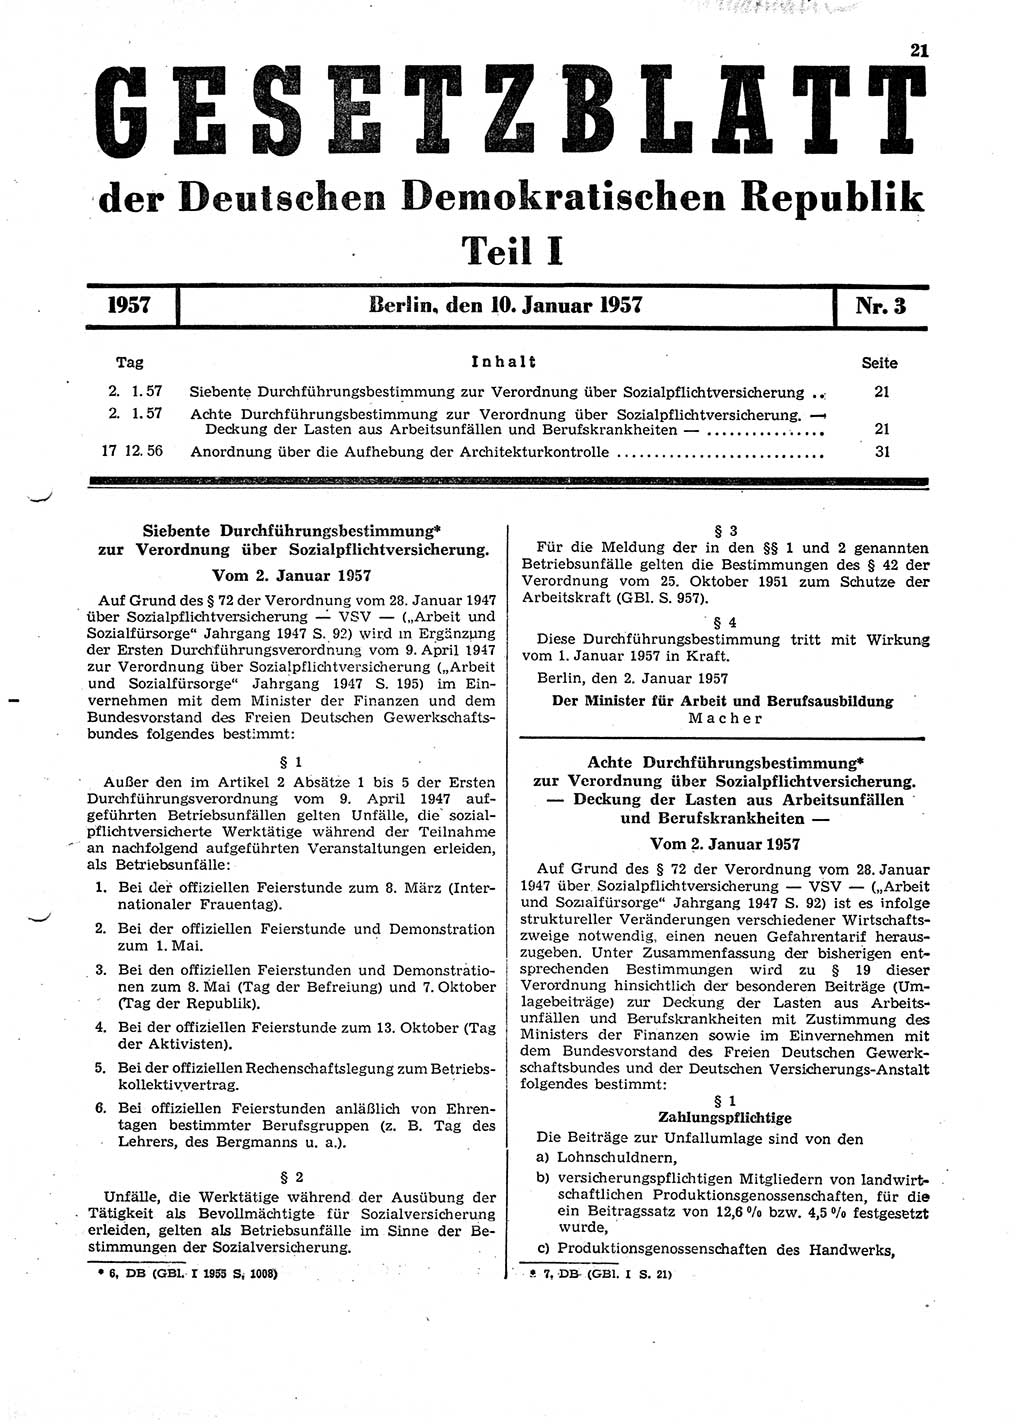 Gesetzblatt (GBl.) der Deutschen Demokratischen Republik (DDR) Teil Ⅰ 1957, Seite 21 (GBl. DDR Ⅰ 1957, S. 21)